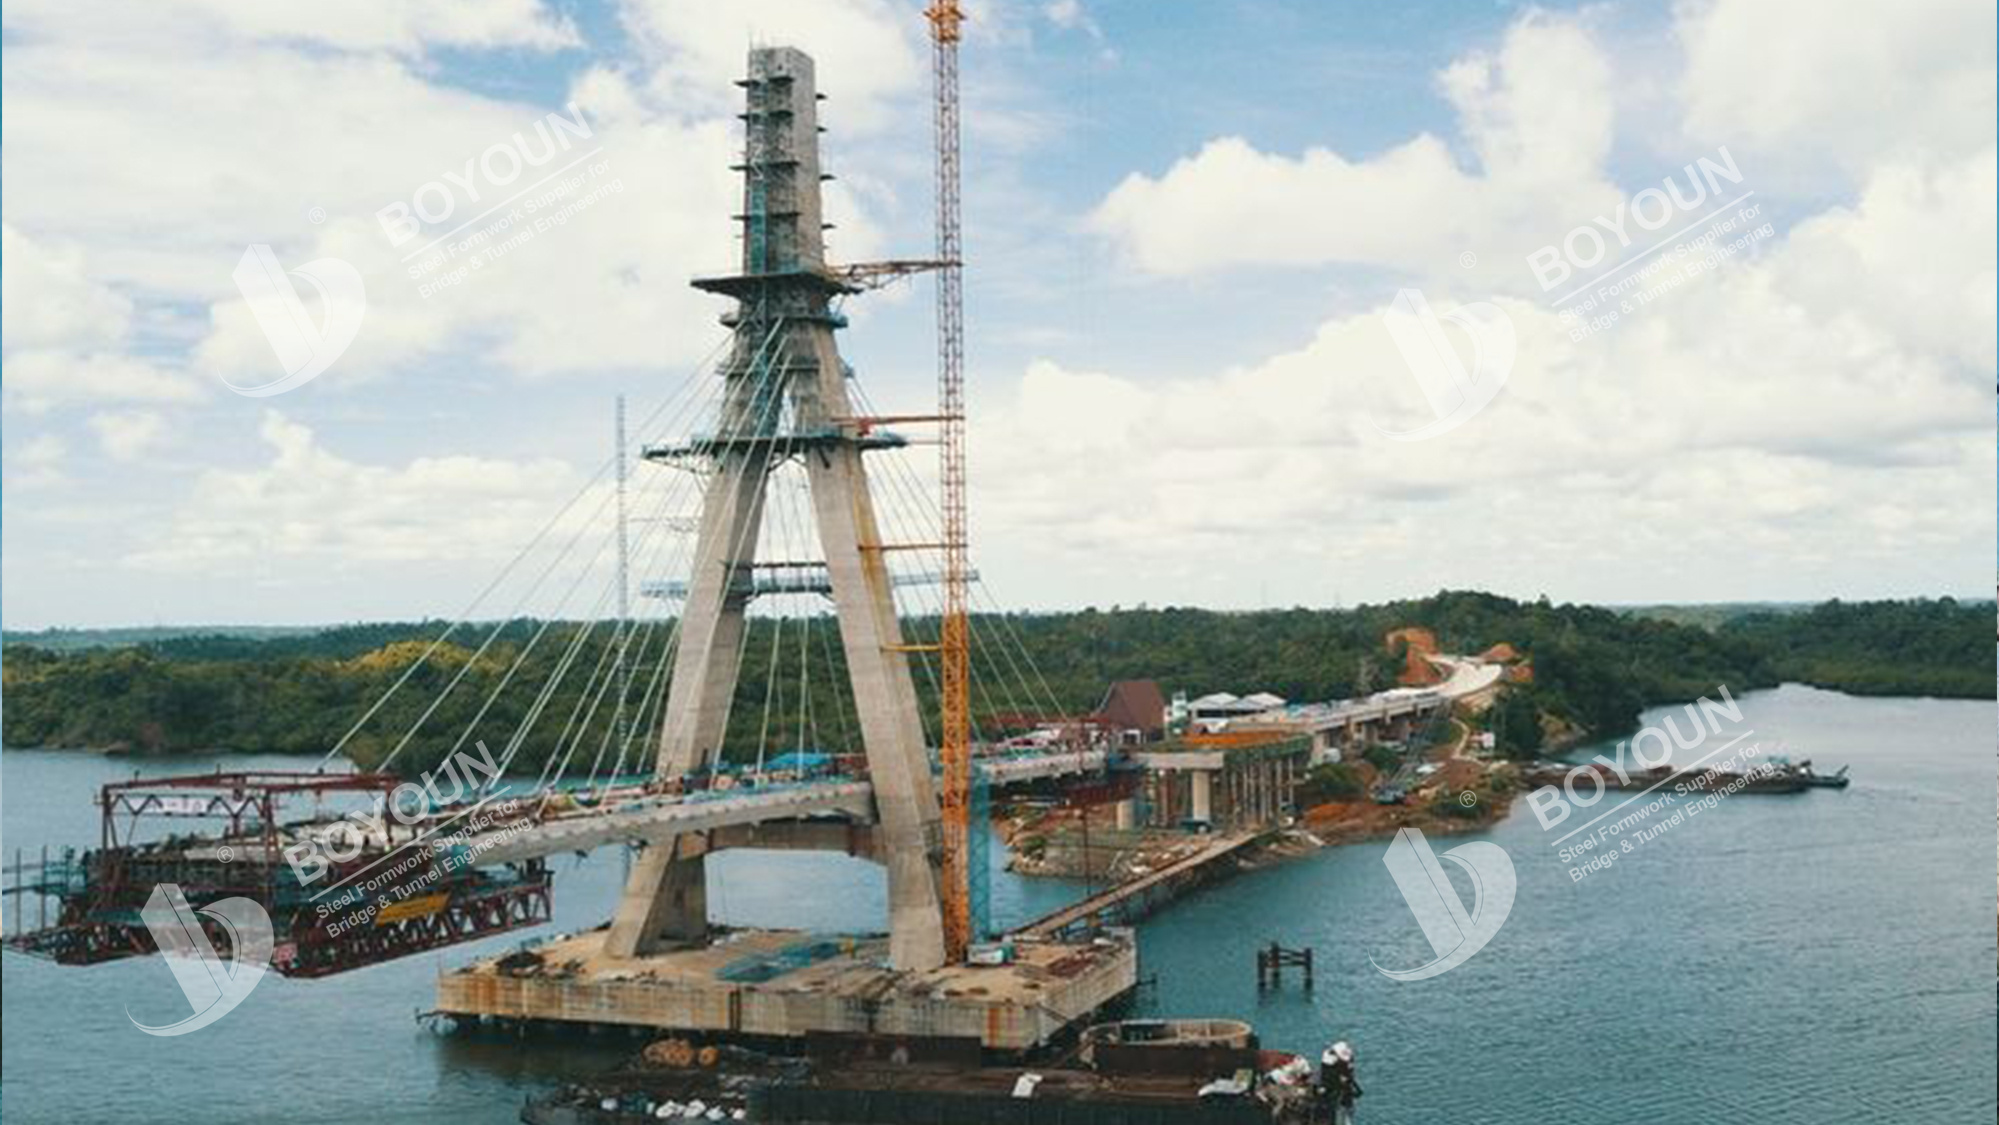 Проект строительства моста пулау баланг в индонезии